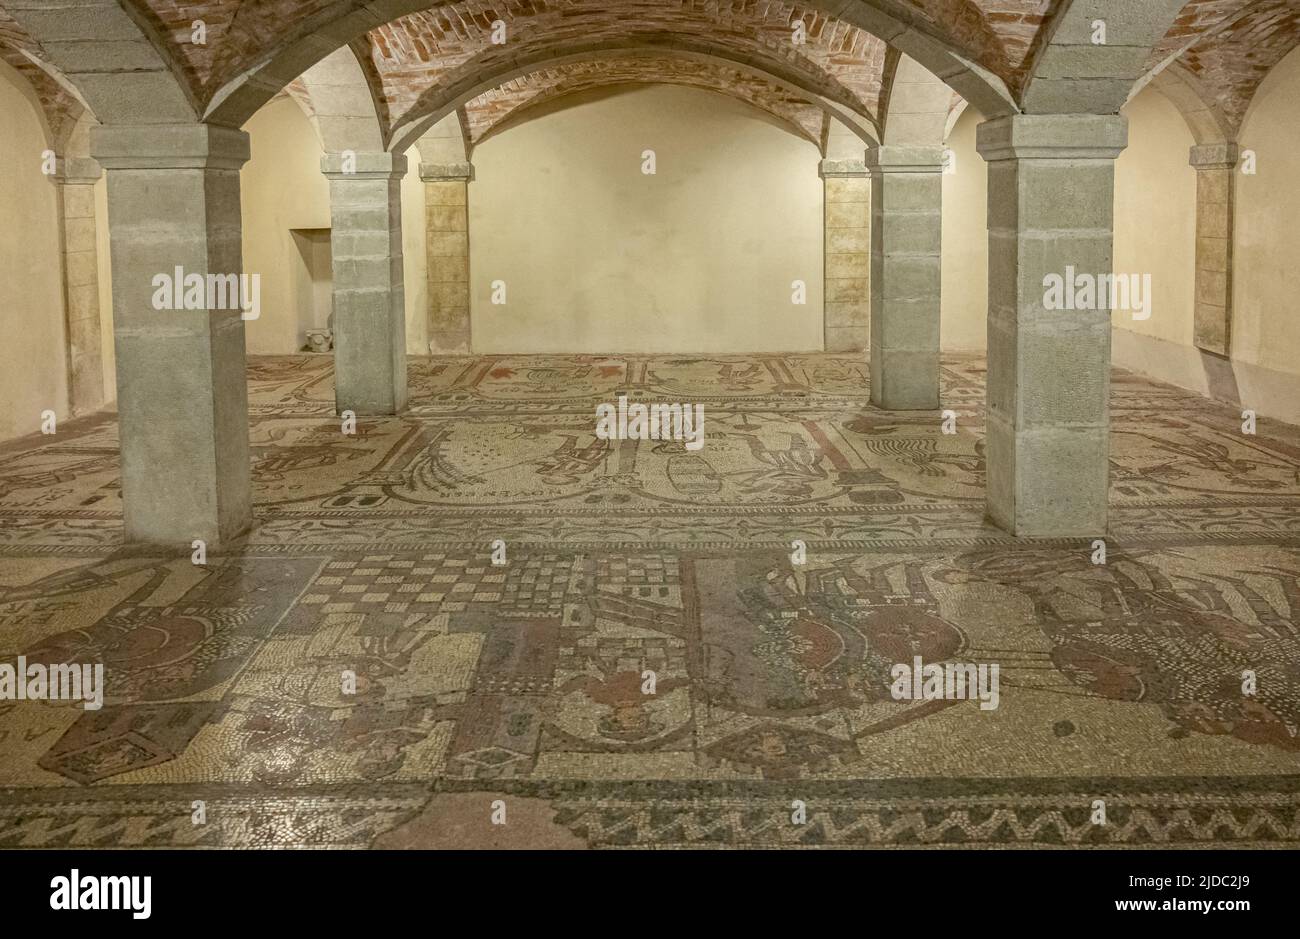 Bobbio, Italia - 24 de mayo de 2018: Los mosaicos del suelo del siglo XI en la cripta de la Abadía de San Colombano Foto de stock